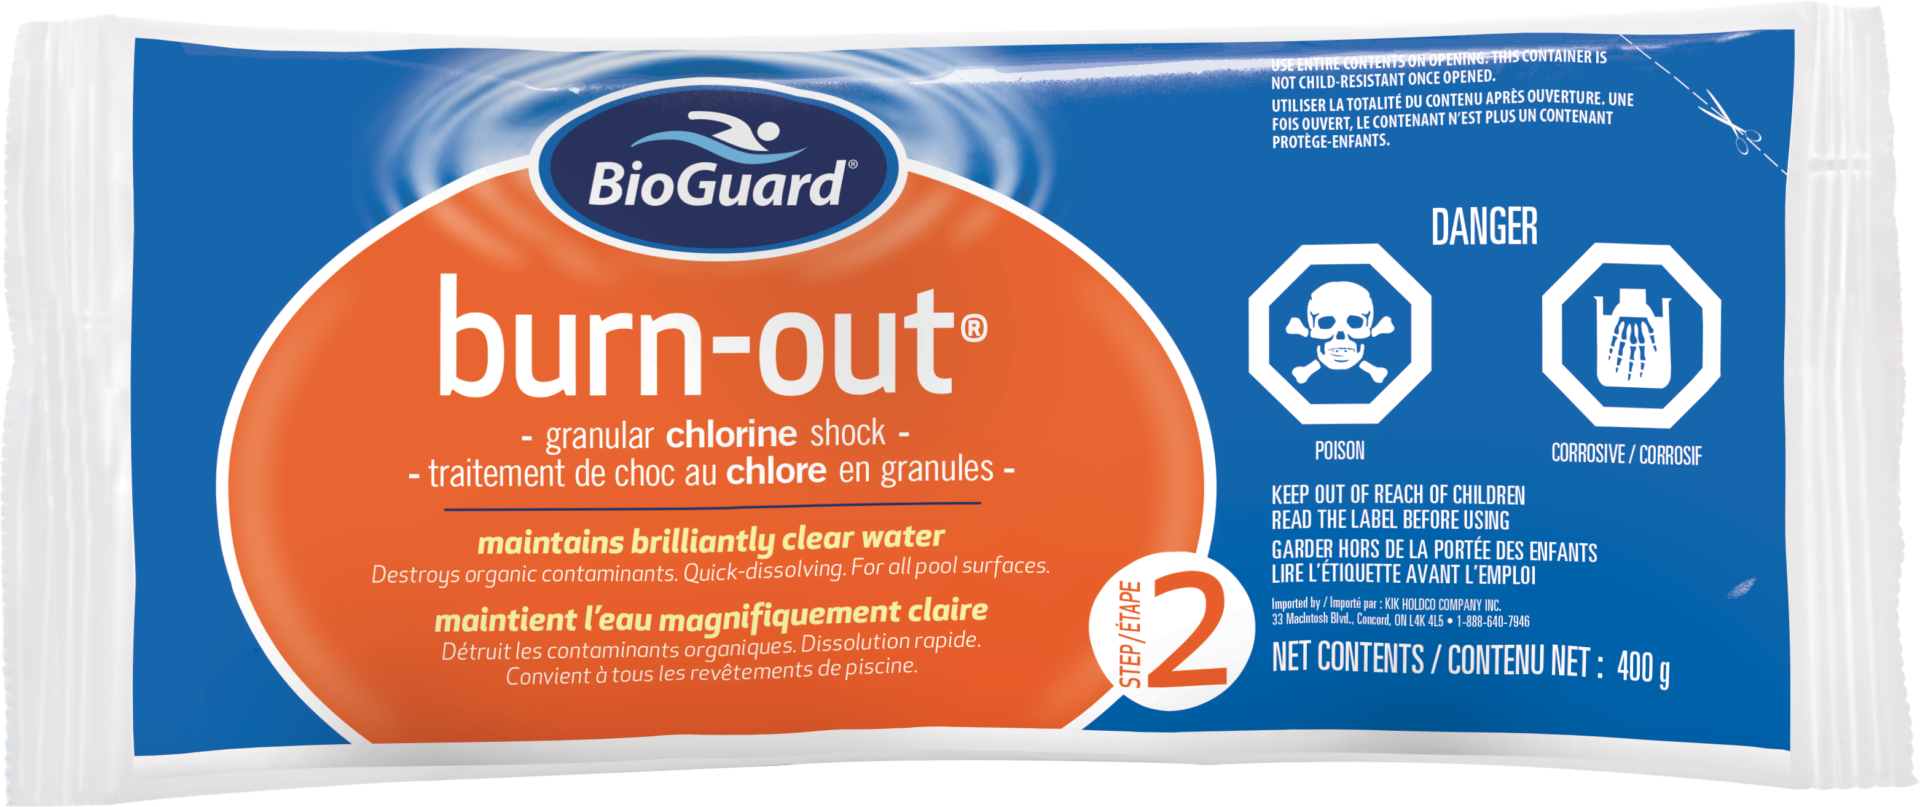 BioGuard Burn Out 400g 1 - BioGuard Burn-Out 400g